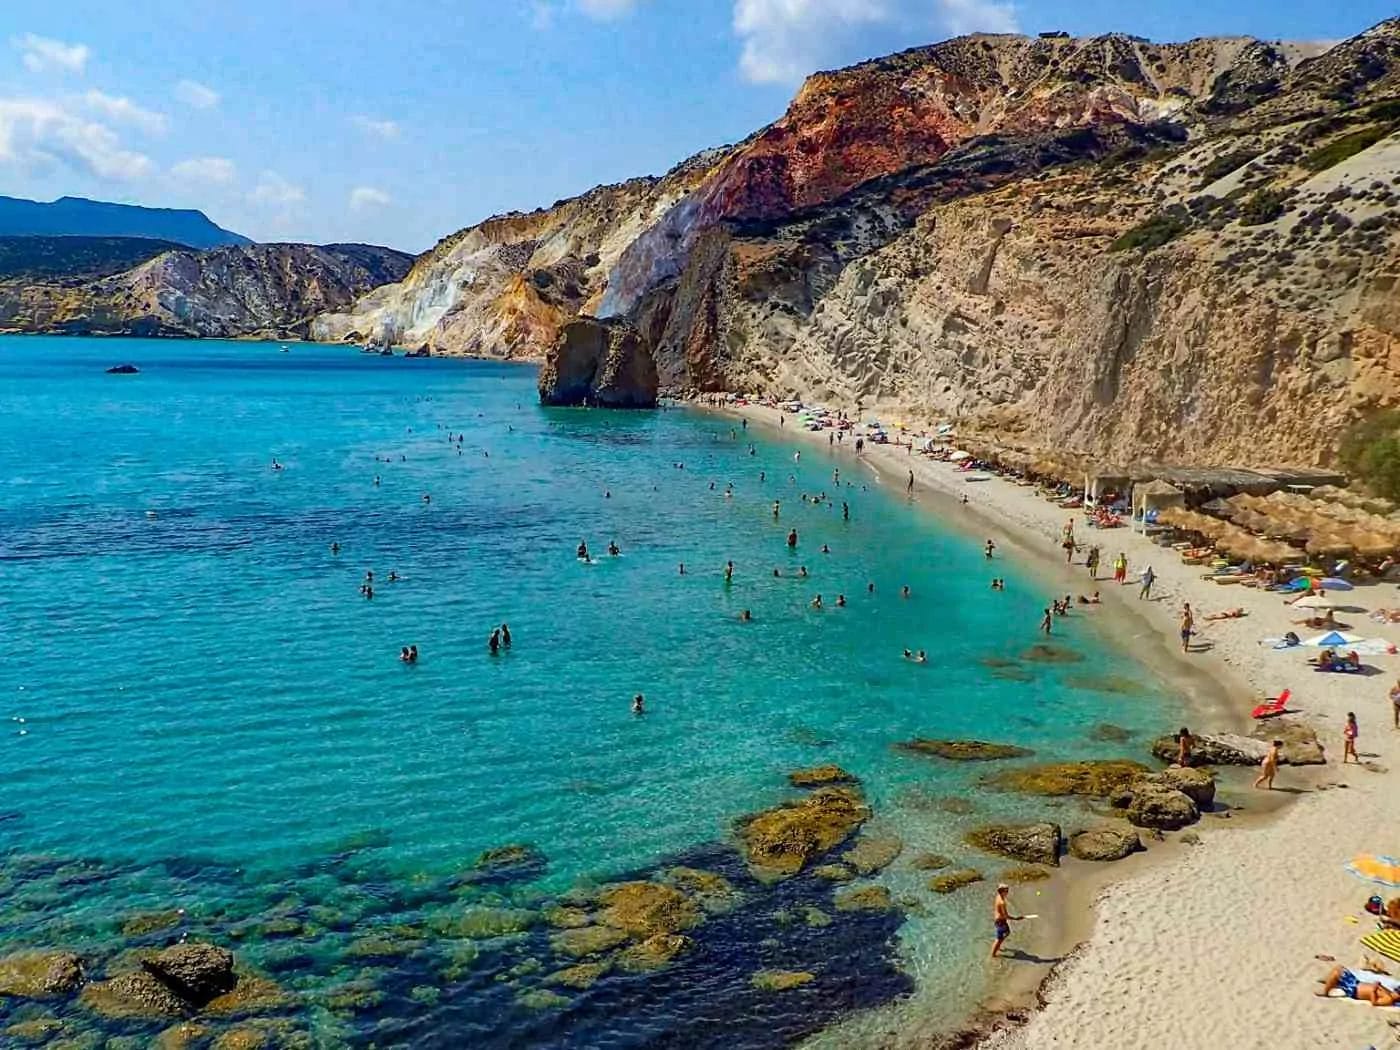 long stretch of sandy beach with straw umbrellas dotting the coastline at Fyriplaka Beach in Milos Greece